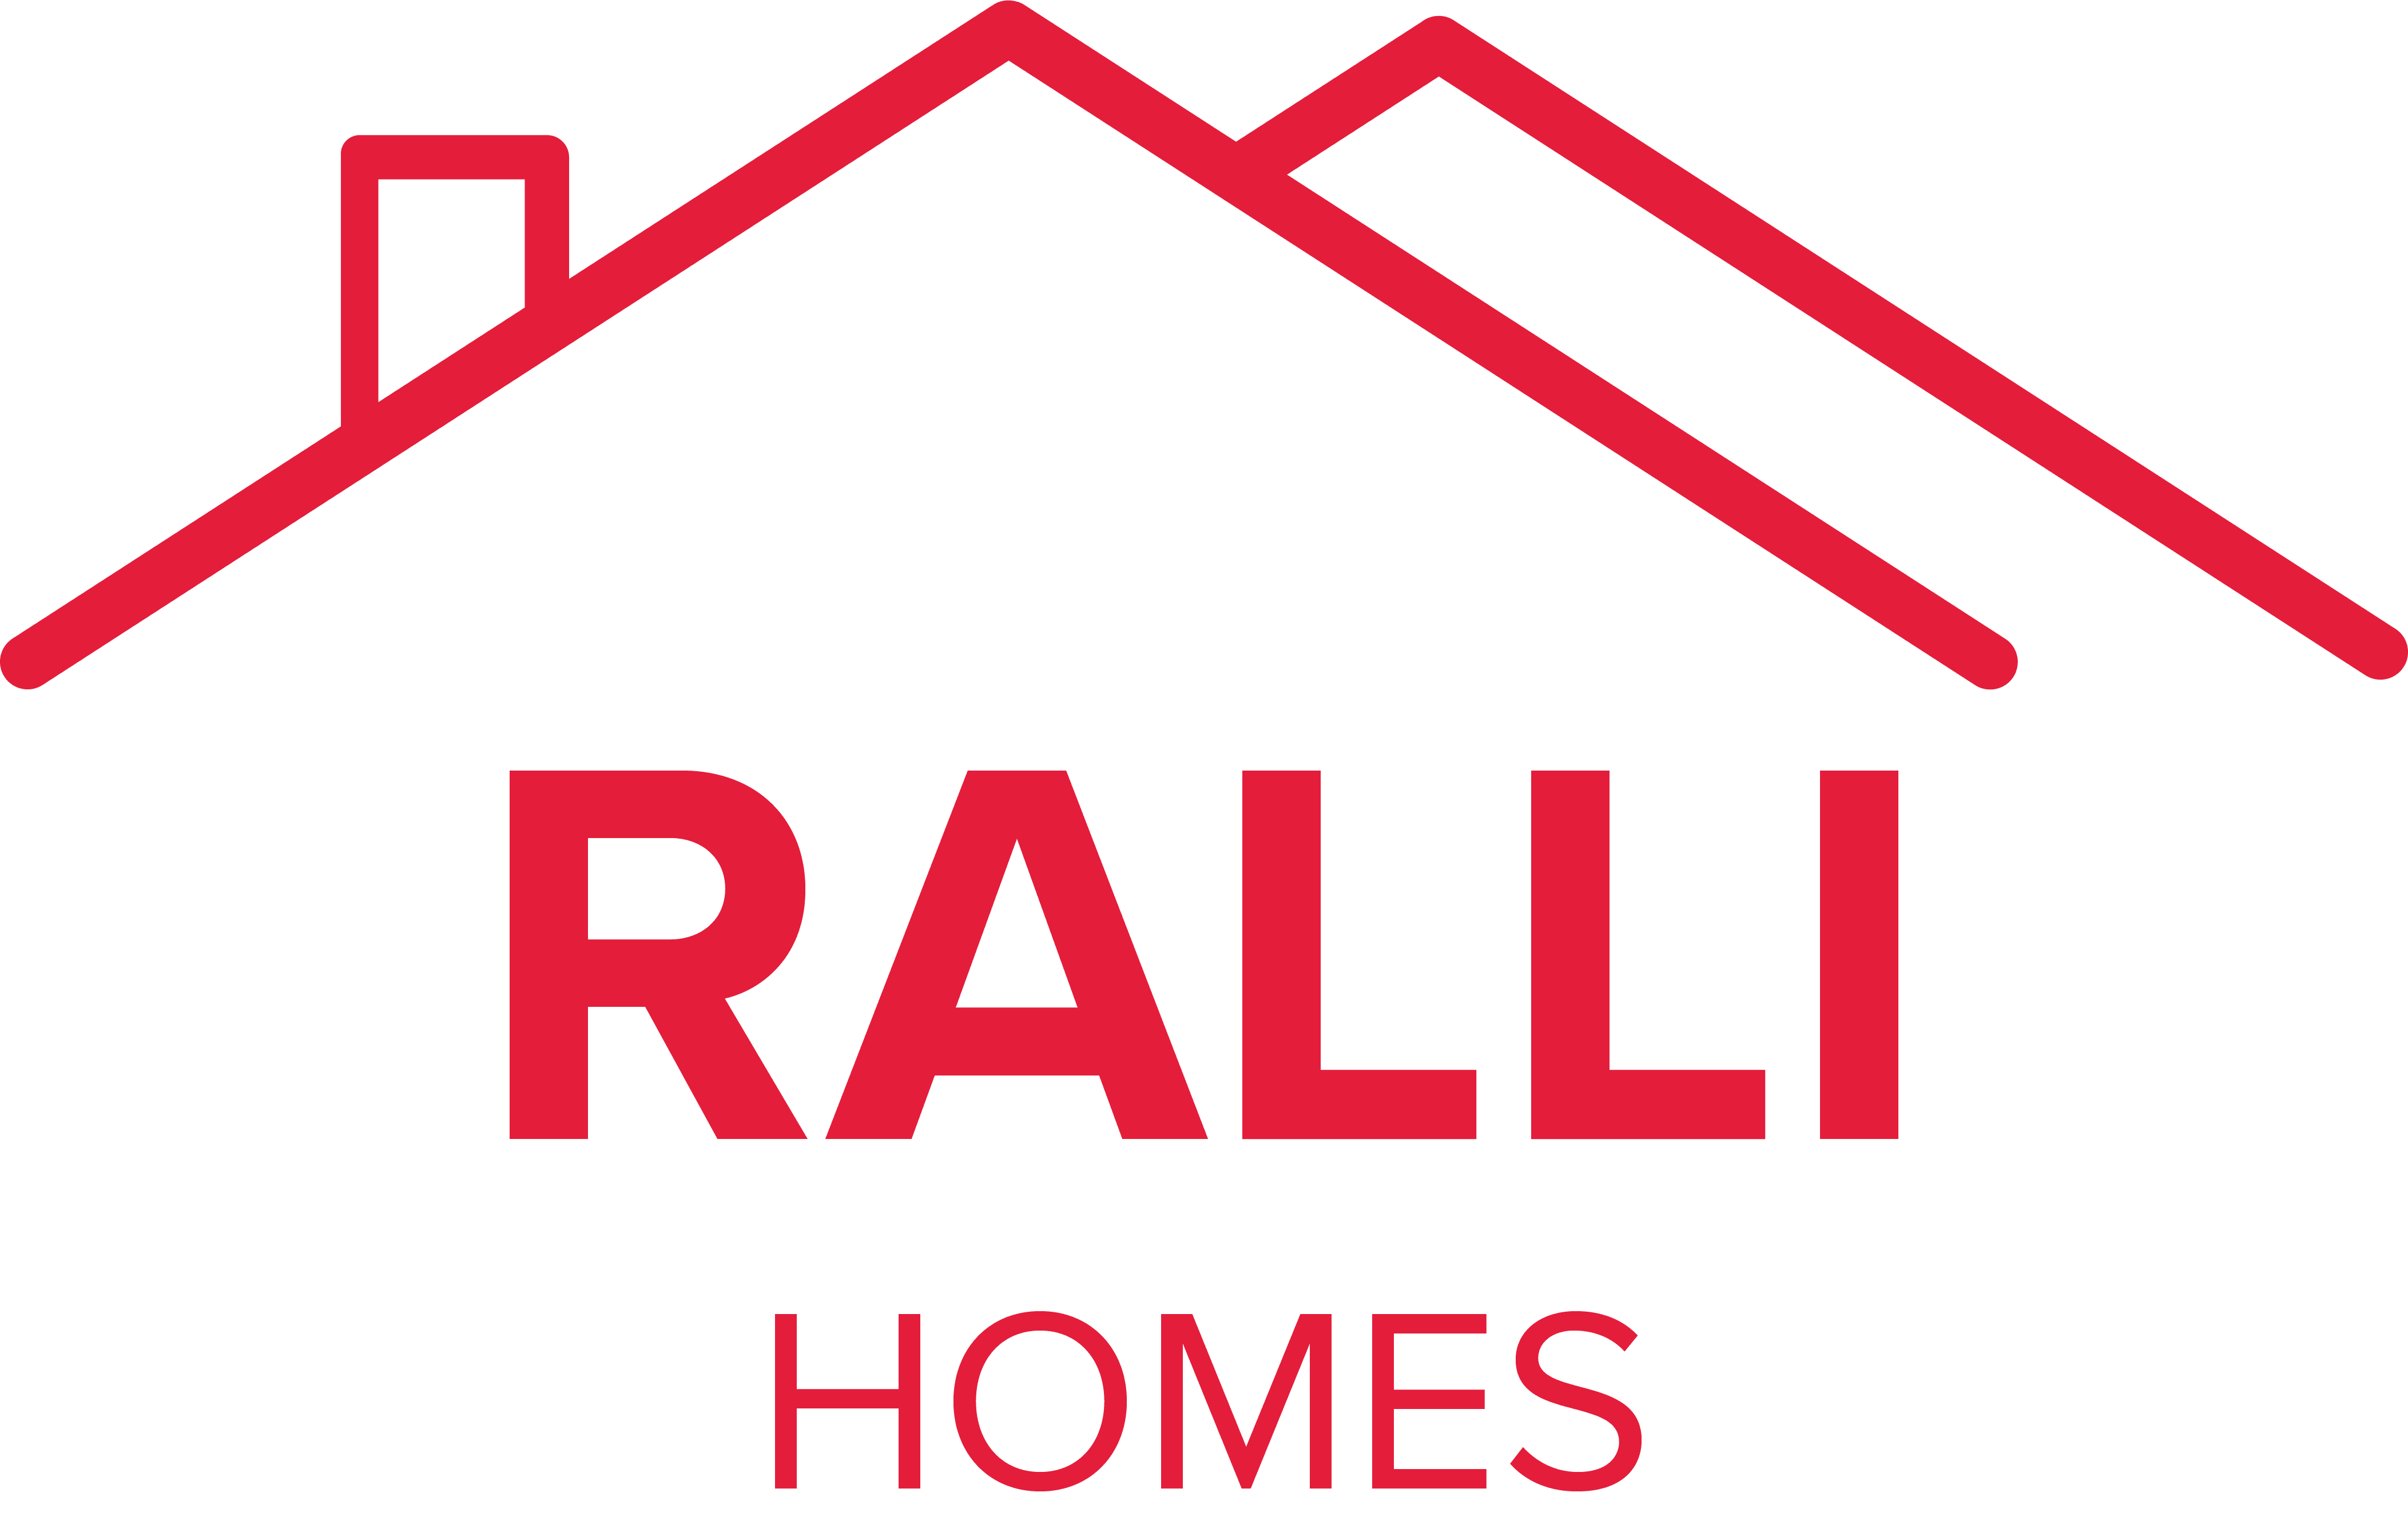 Ralli Homes